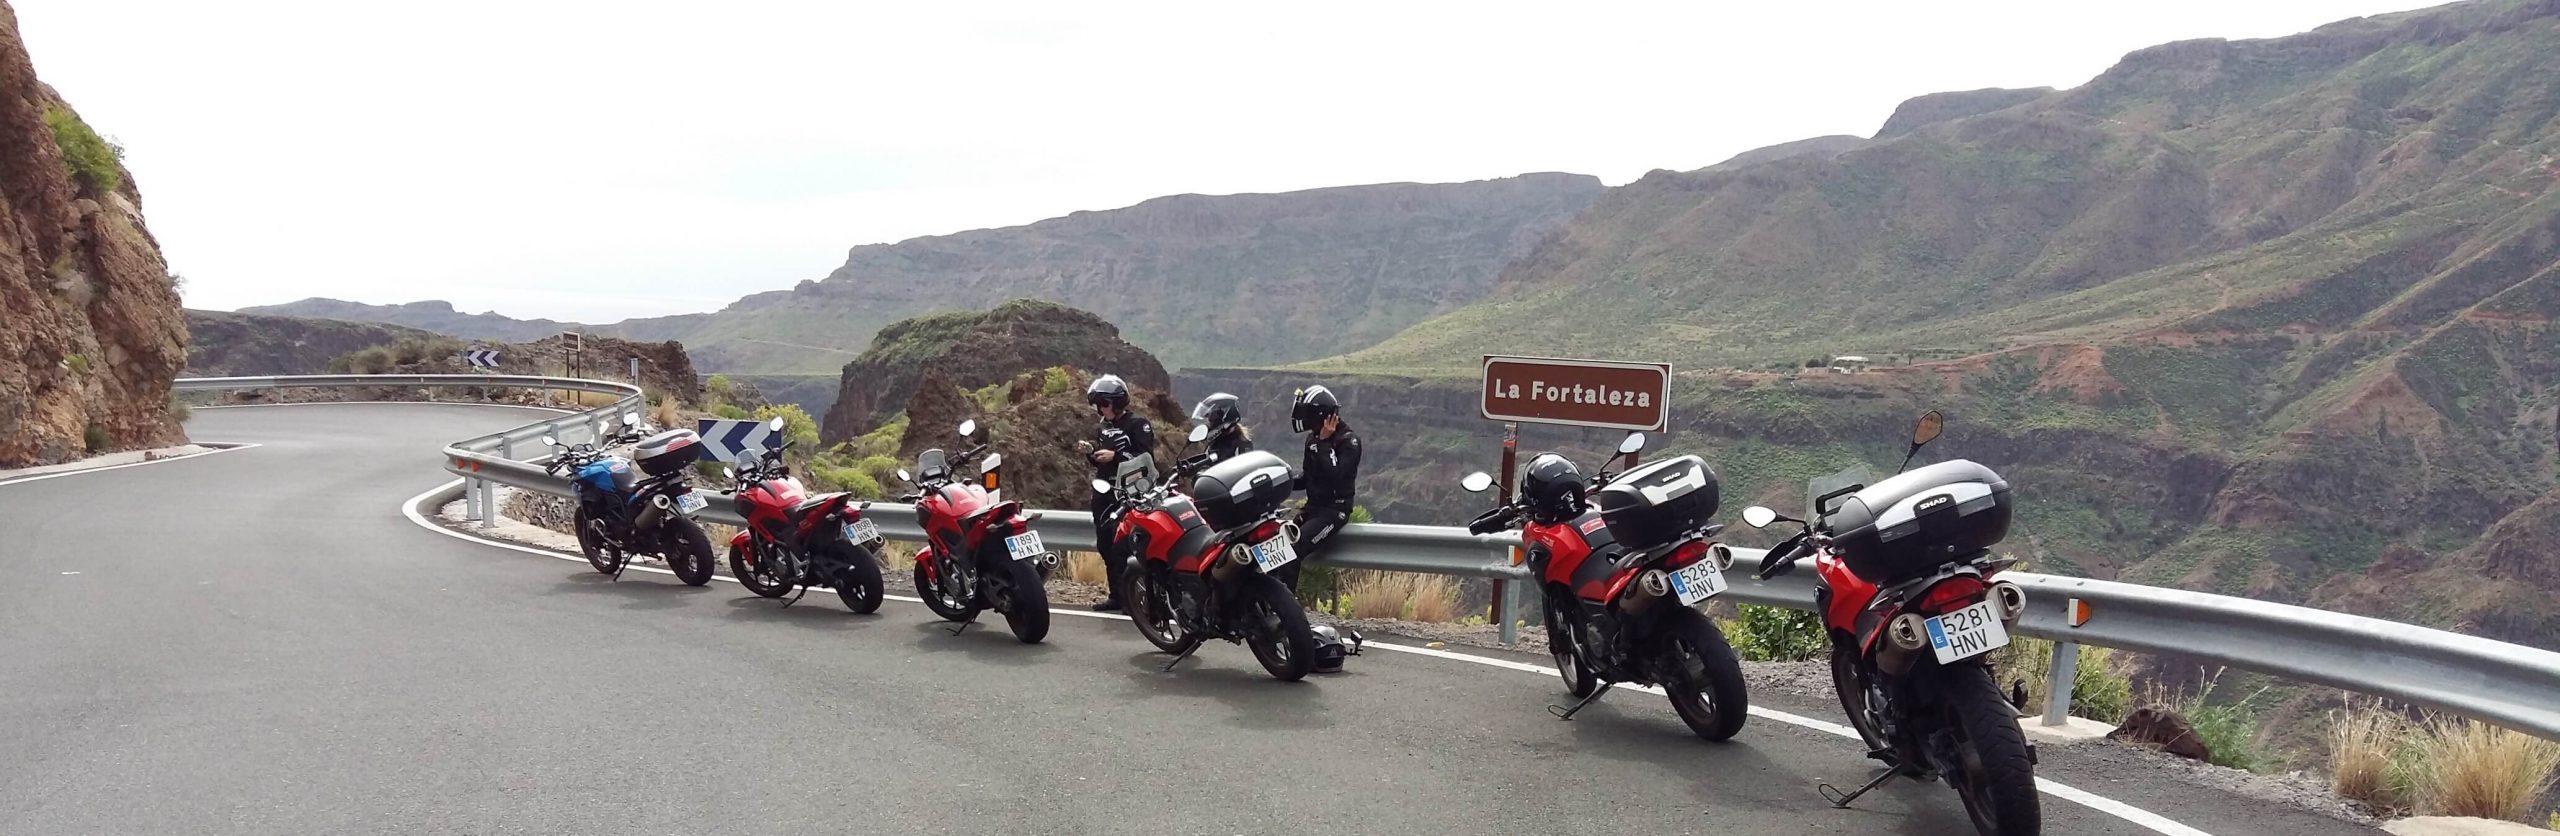 Spanje het paradijs voor de motorrijder, Travel Moto Andalusie